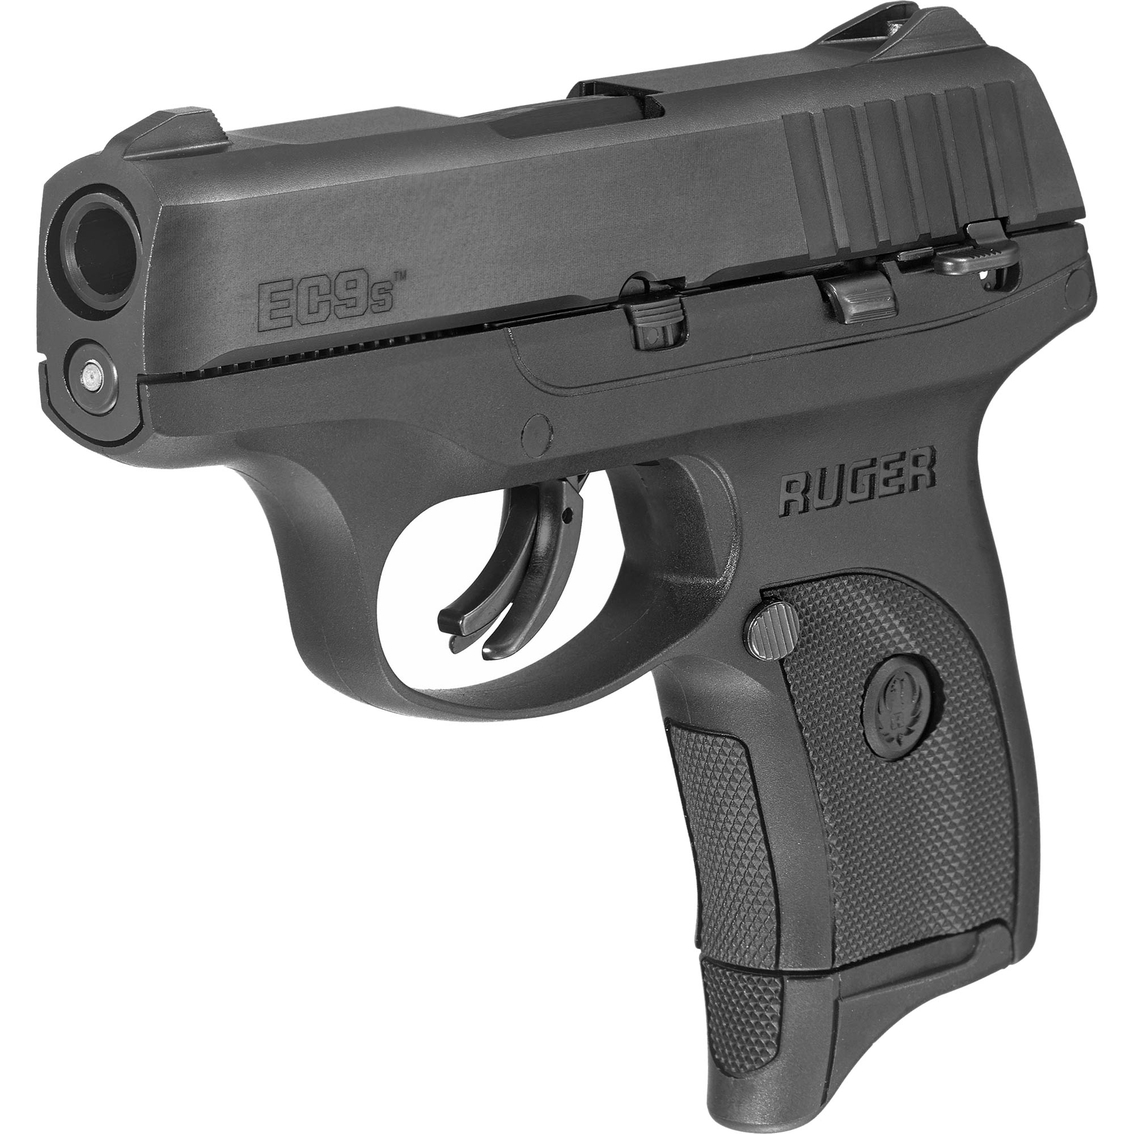 Ruger EC9s 9mm 3.1 in. Barrel 7 Rnd 1 Mag Pistol Black - Image 2 of 2